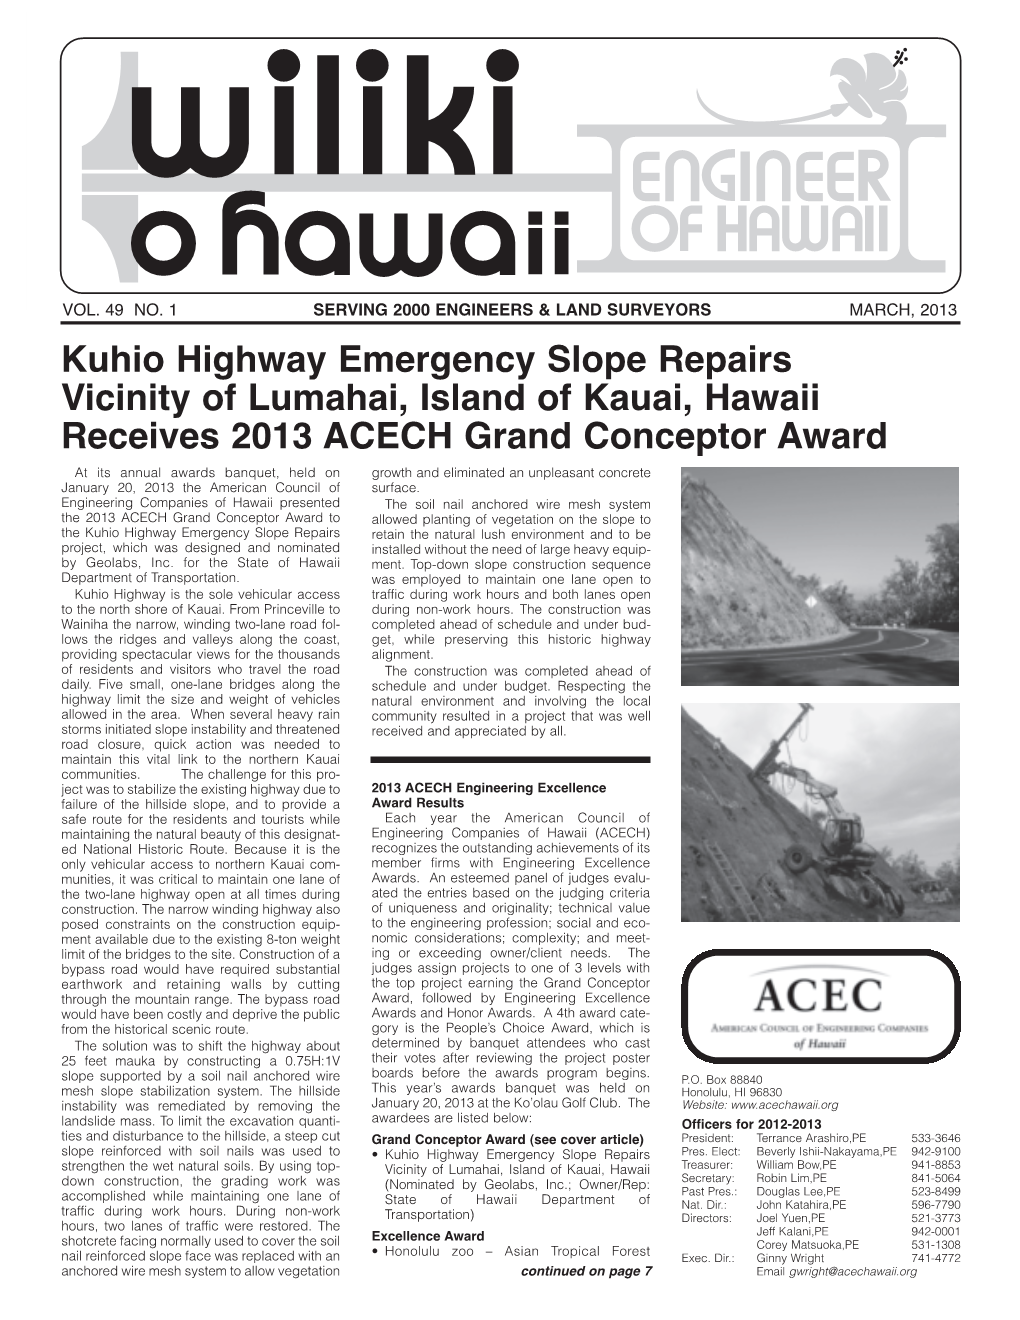 Kuhio Highway Emergency Slope Repairs Vicinity of Lumahai, Island